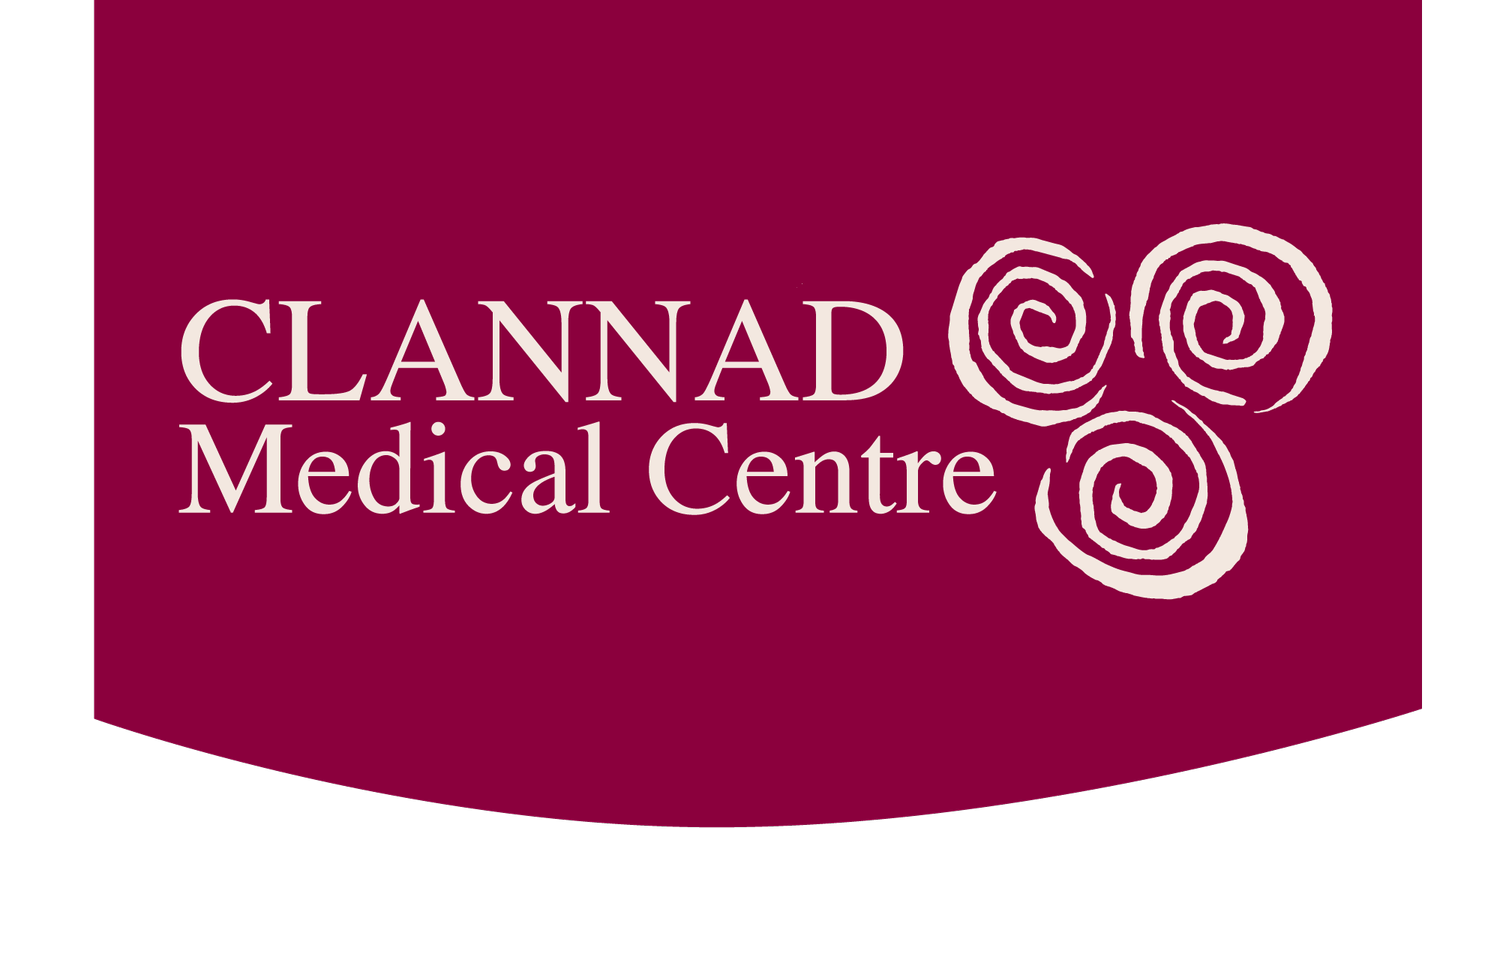 Clannad Medical